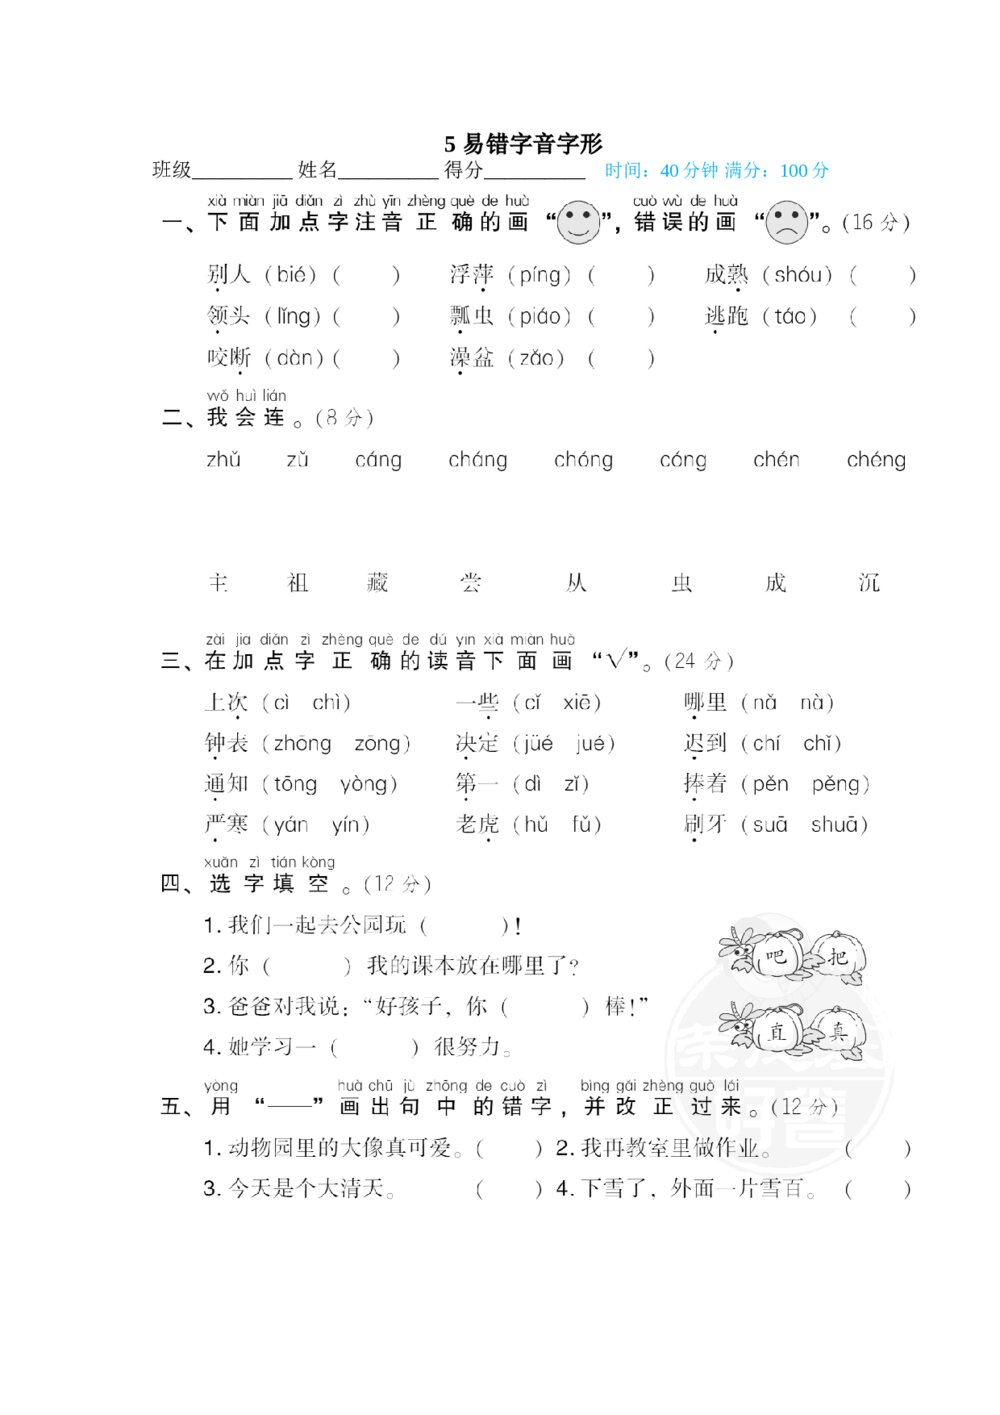 一年级语文下册汉字书写专项训练卷-易错字音字形